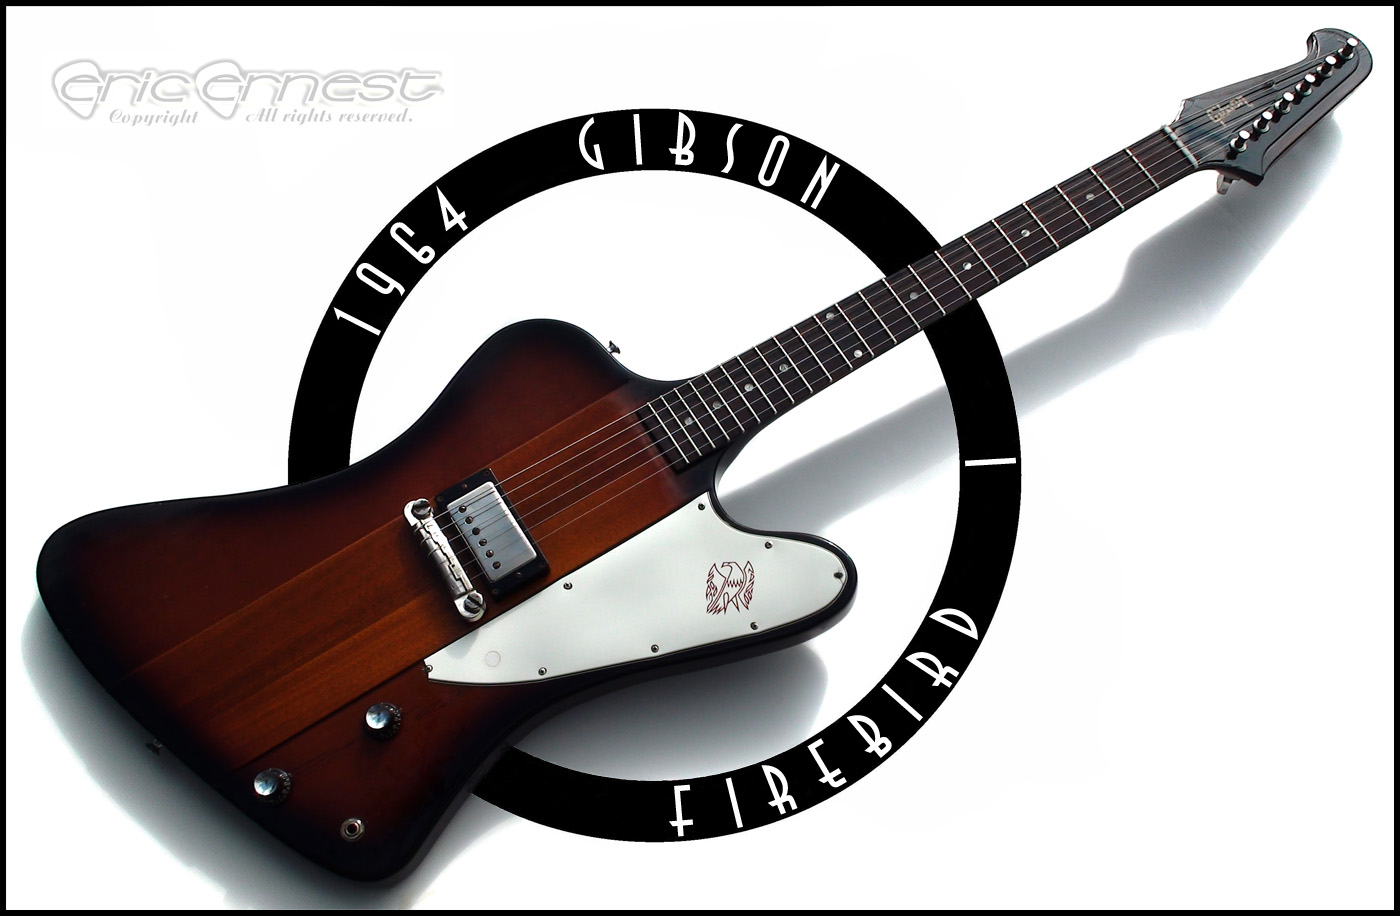 Gibson Wallpaper Firebird Guitar Mmmm